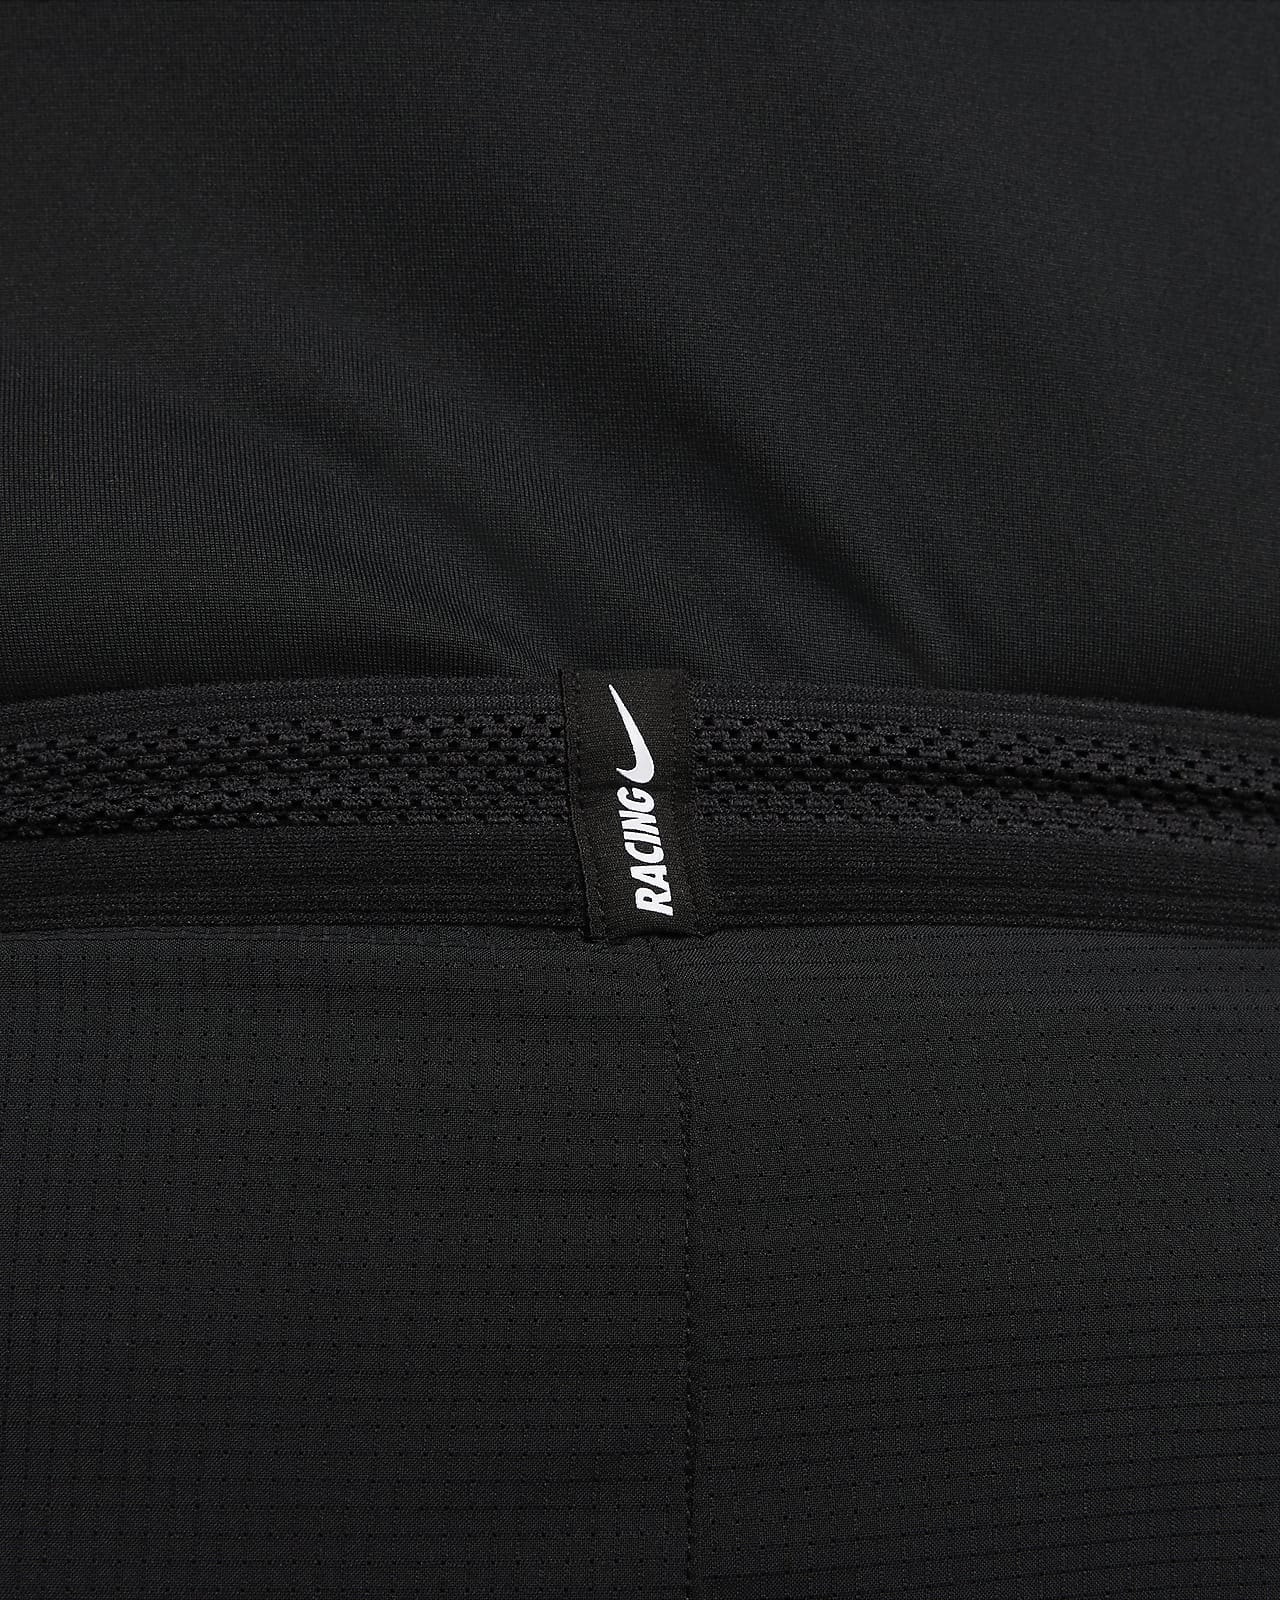 Nike Dri-FIT ADV AeroSwift Racer Running Pants Size L Black Joggers DM4615  010